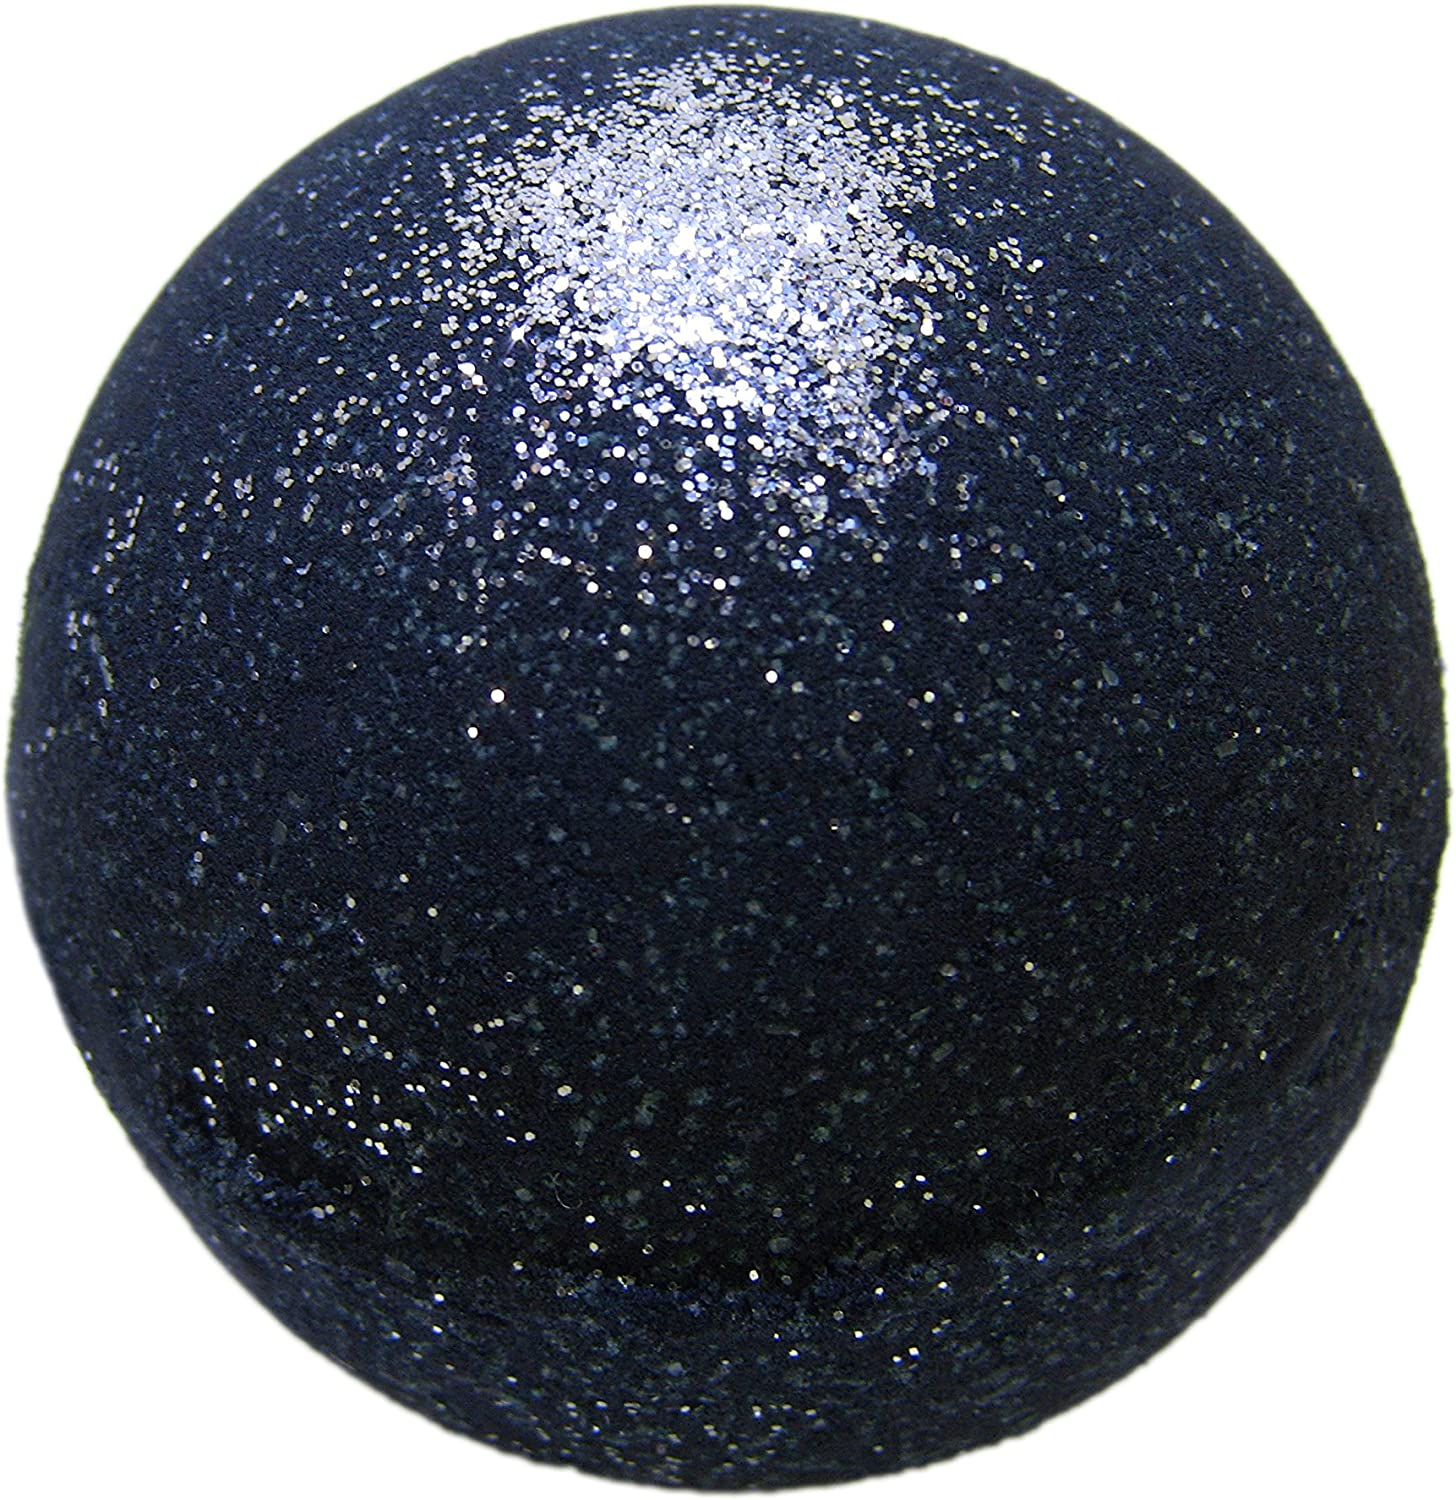 Wholesale Black Bath Bomb With Silver Glitter